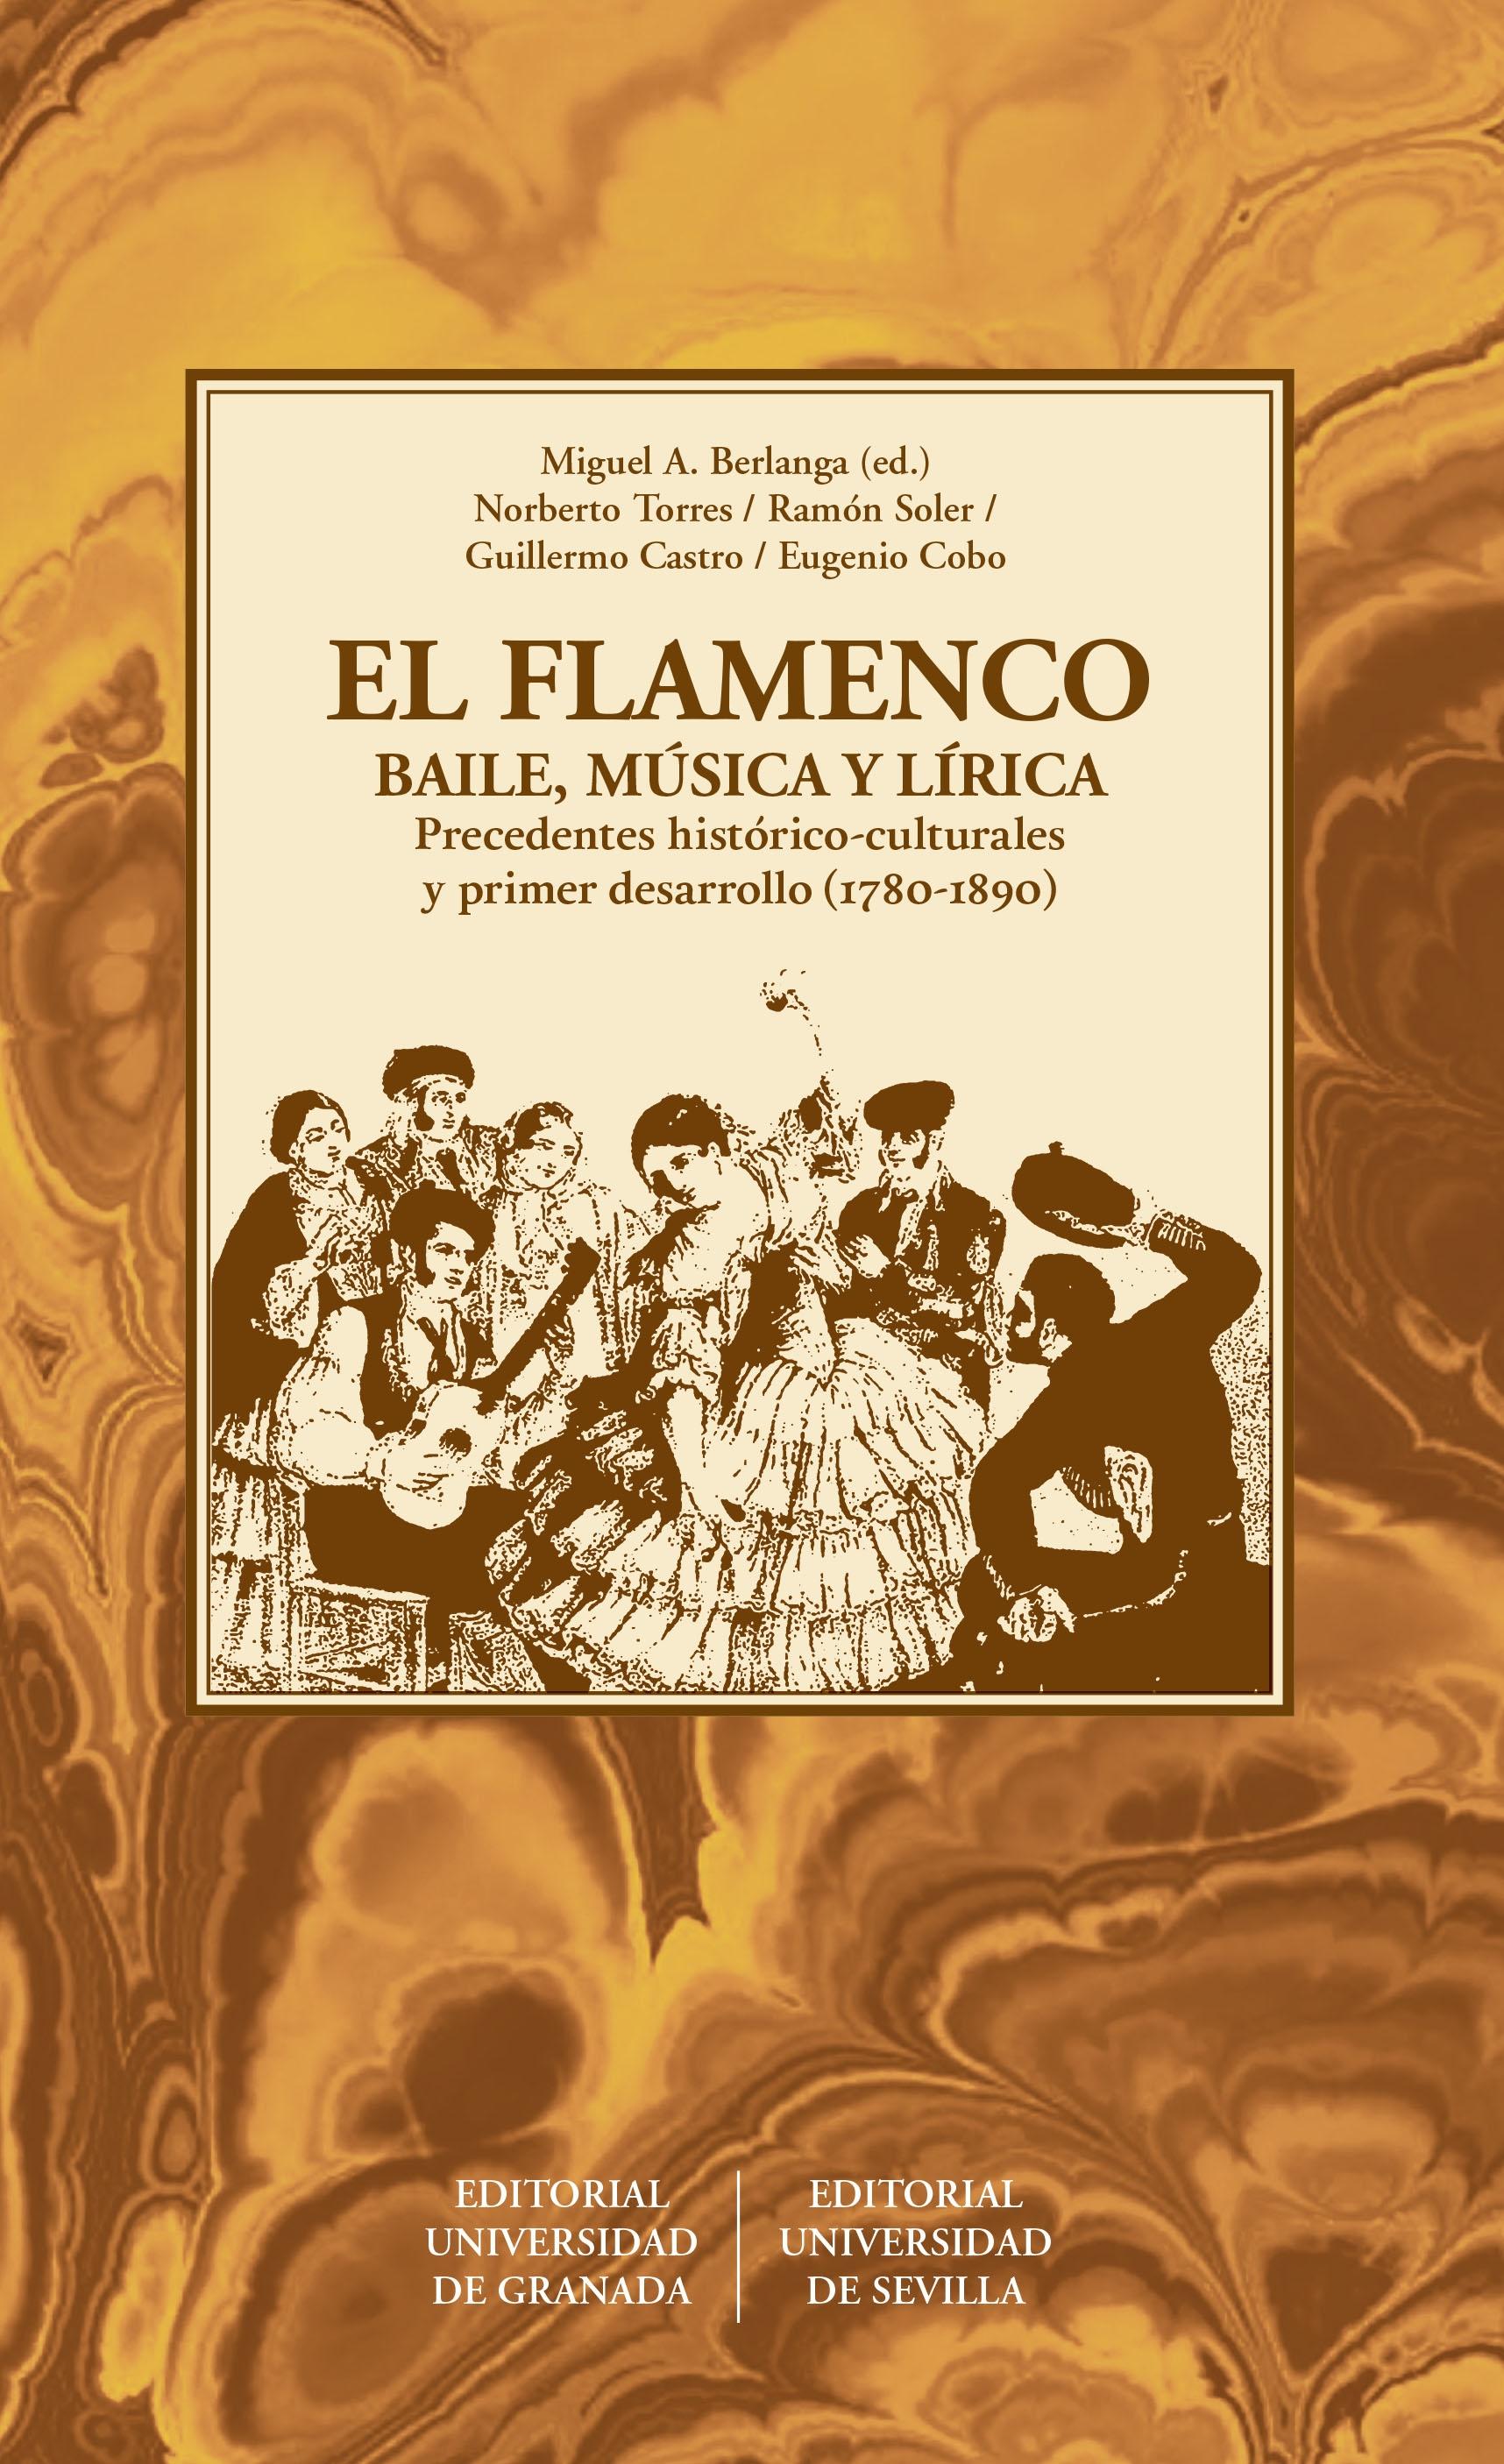 EL FLAMENCO "PRECEDENTES HISTORICO-CULTURALES Y PRIMER DESARROLLO ( 1780-1890 )"